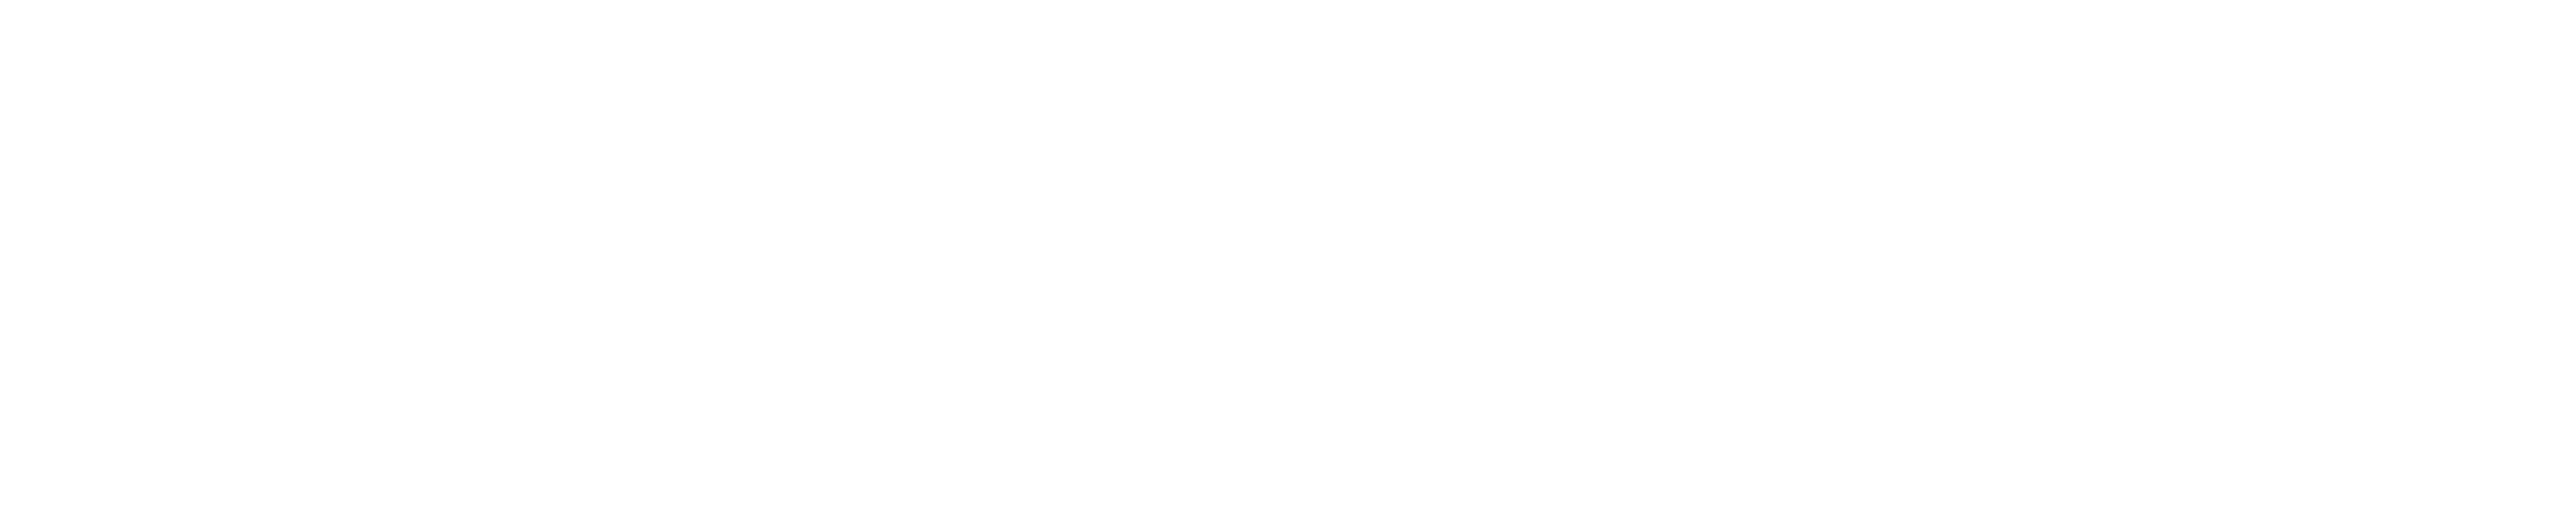 Krefeld650 Logo